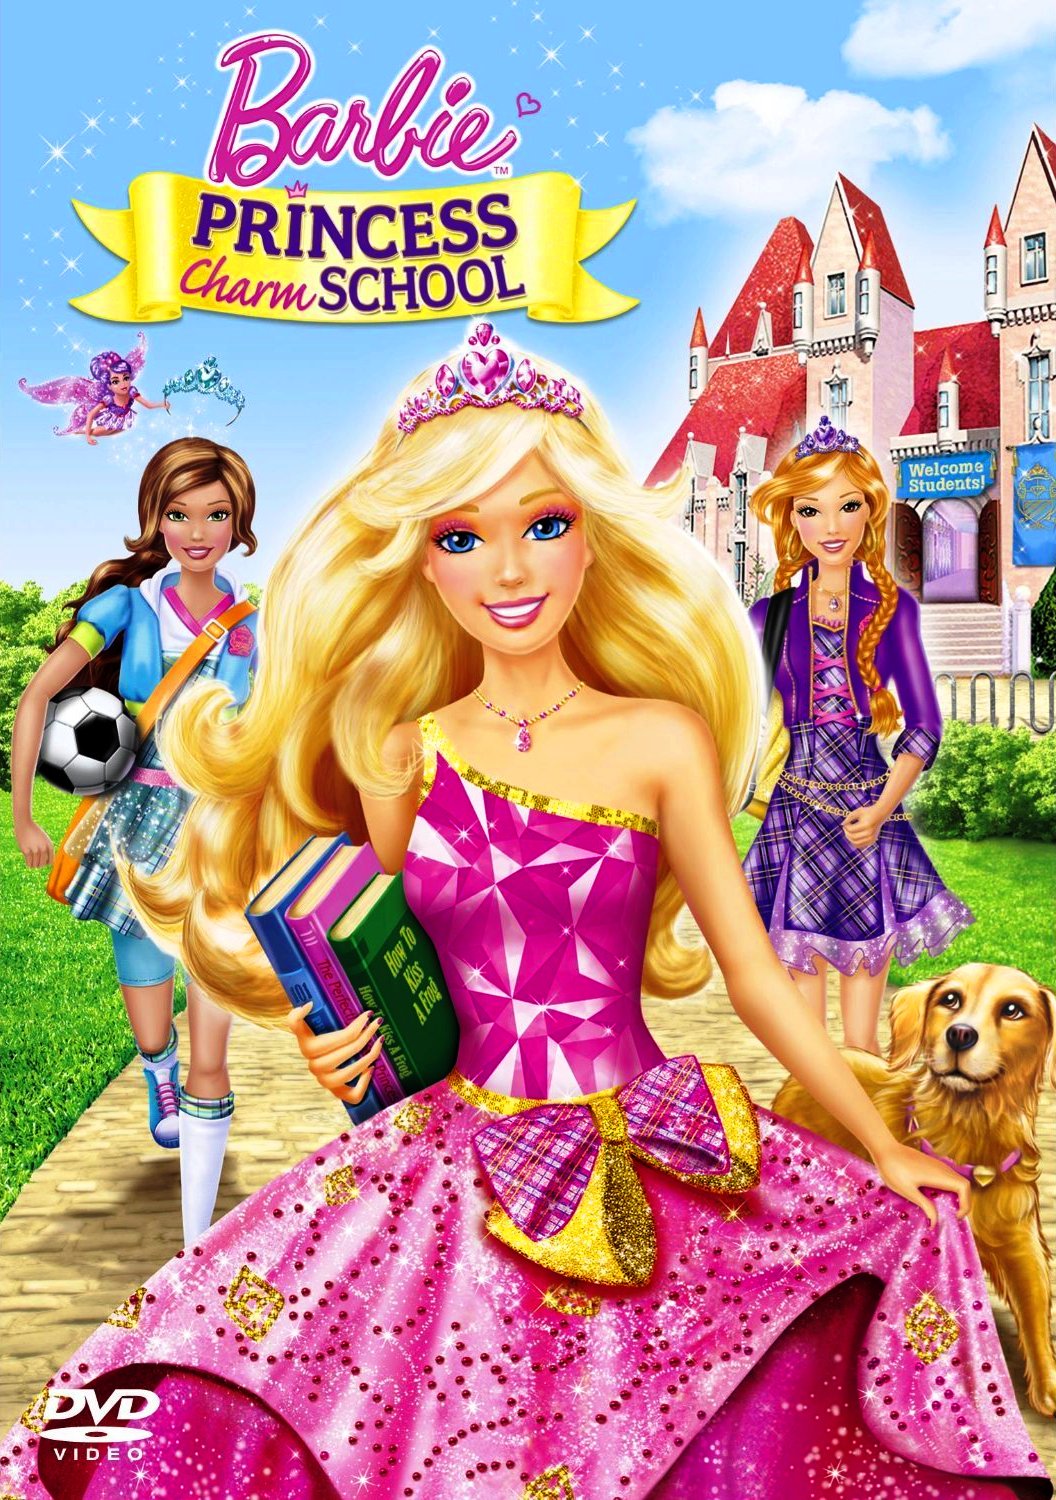 Extensamente Ambicioso atravesar Barbie: Escuela de princesas | Doblaje Wiki | Fandom